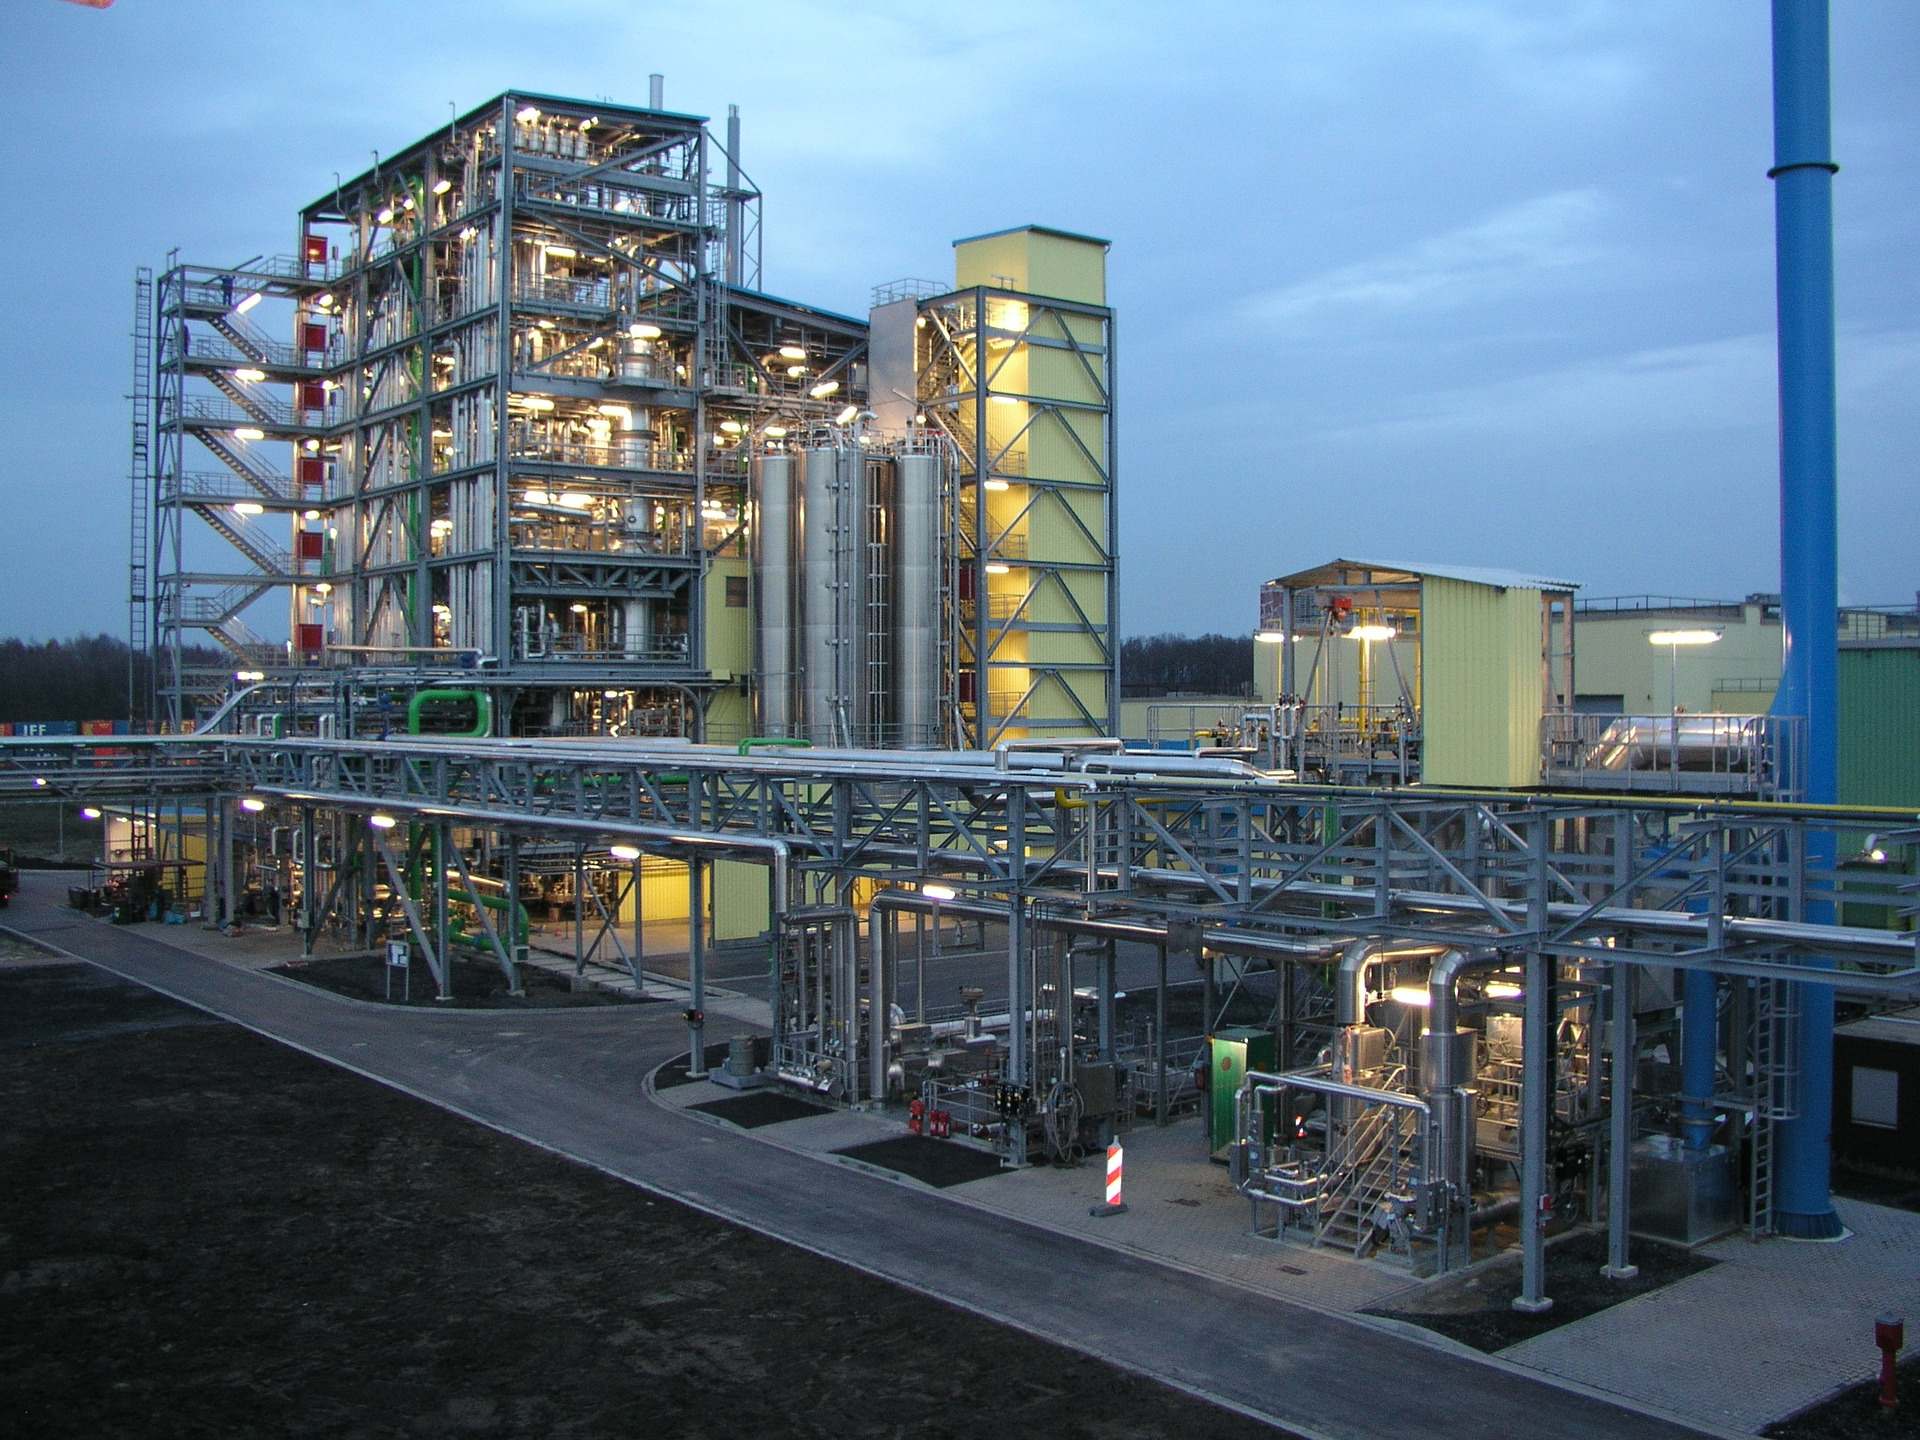 杜贝Hamm-Uentrop聚合物是朗盛和杜邦之间的合资企业。它产生聚丁烯terephtalate (PBT),为高性能塑料基材。使用它,例如,在汽车行业,在电气和电子行业,机械工程,化工行业和设备工程。